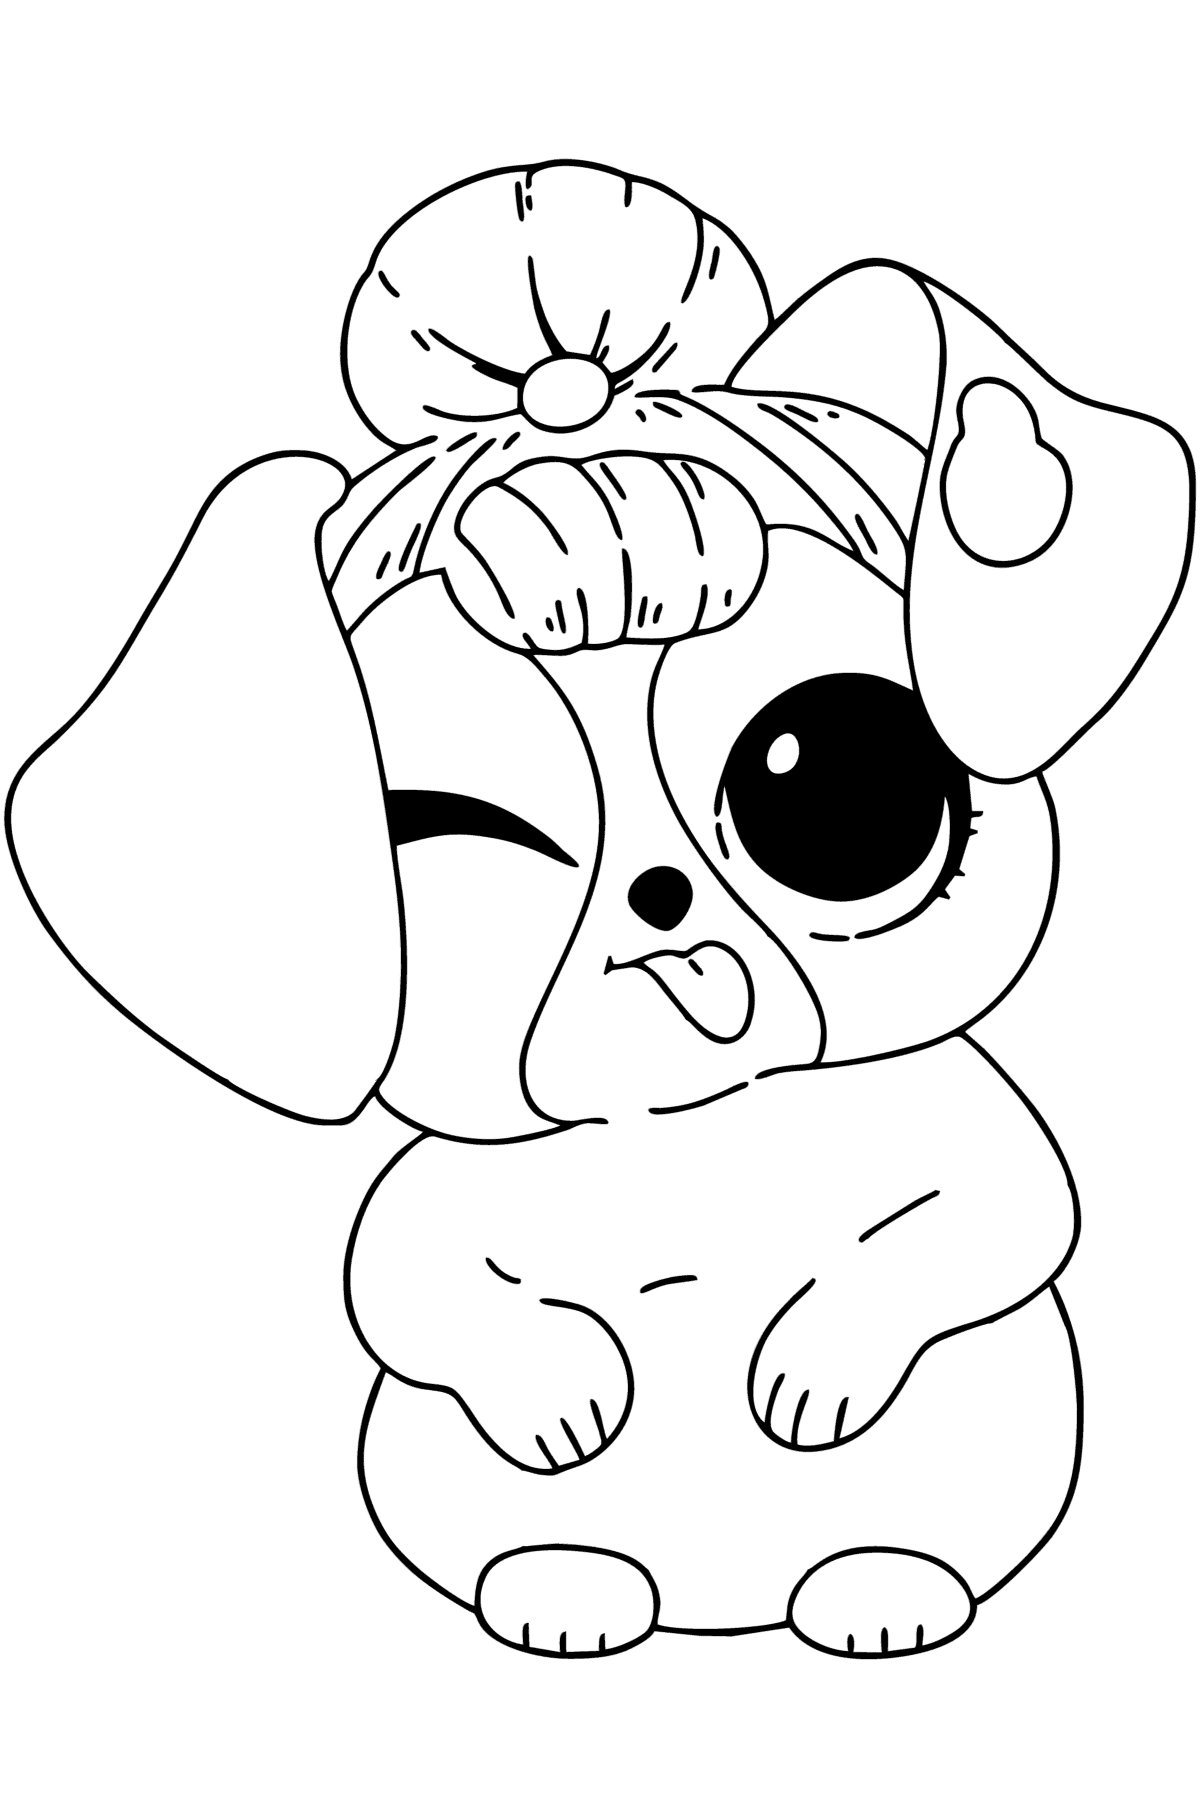 Раскраска милый щенок LOL - Картинки для Детей